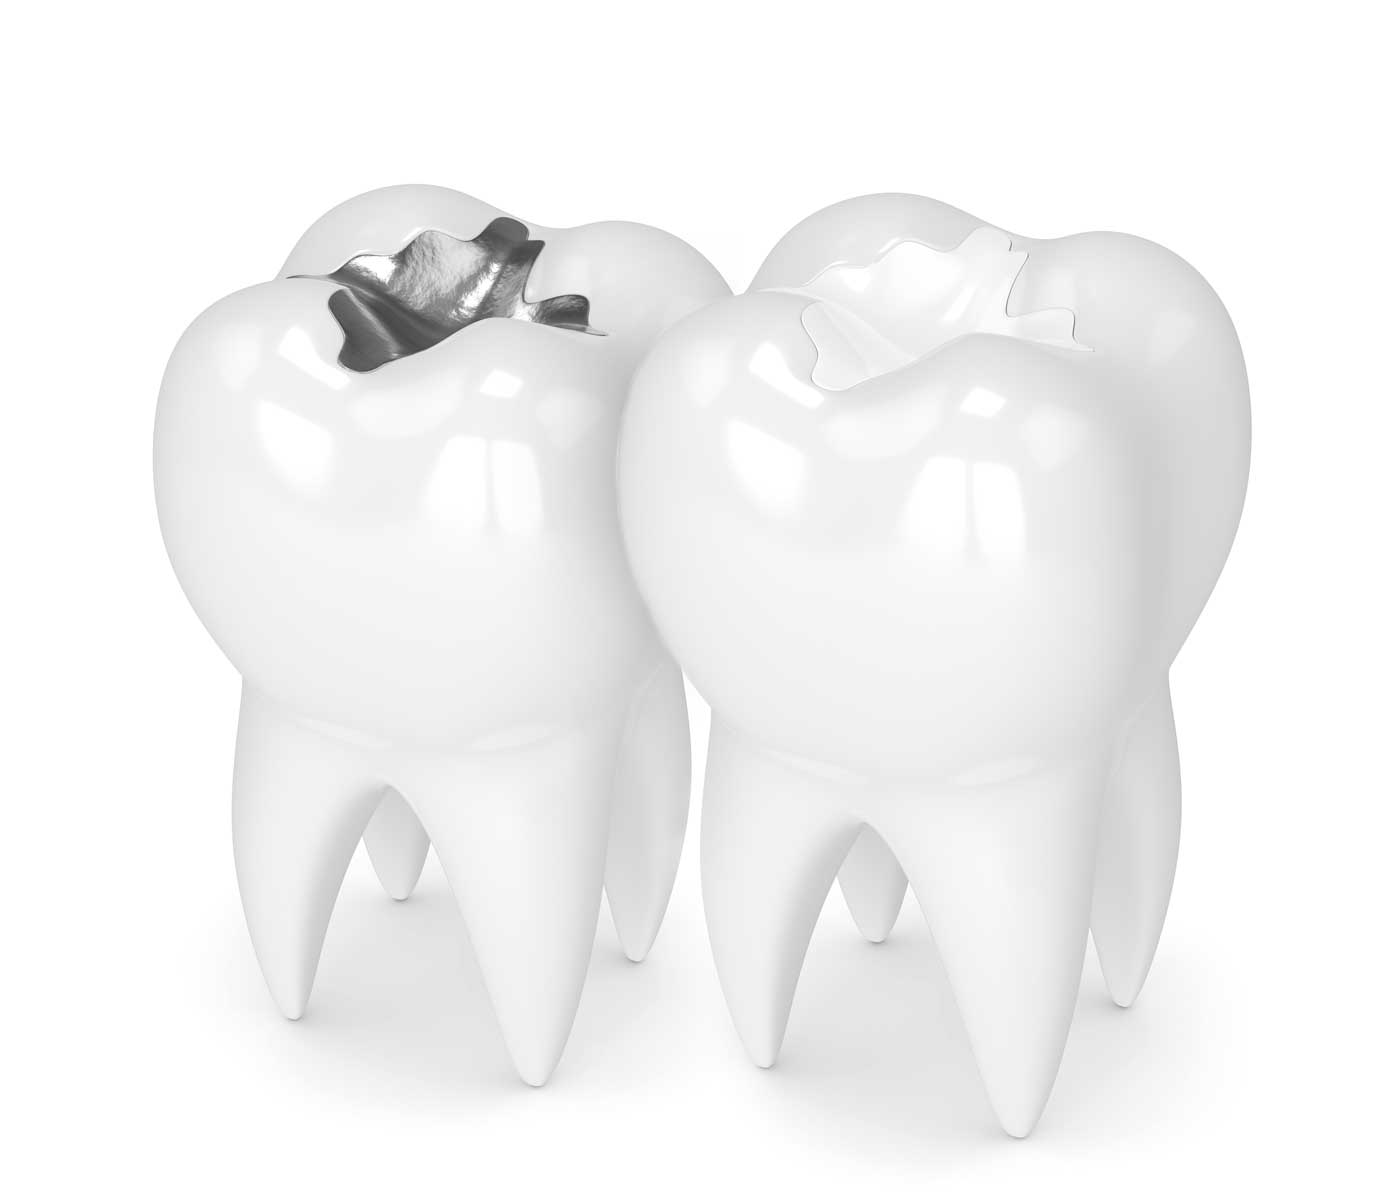 پرکردن دندان با مواد سفید یا سیاه؟ کدام بهتر است؟